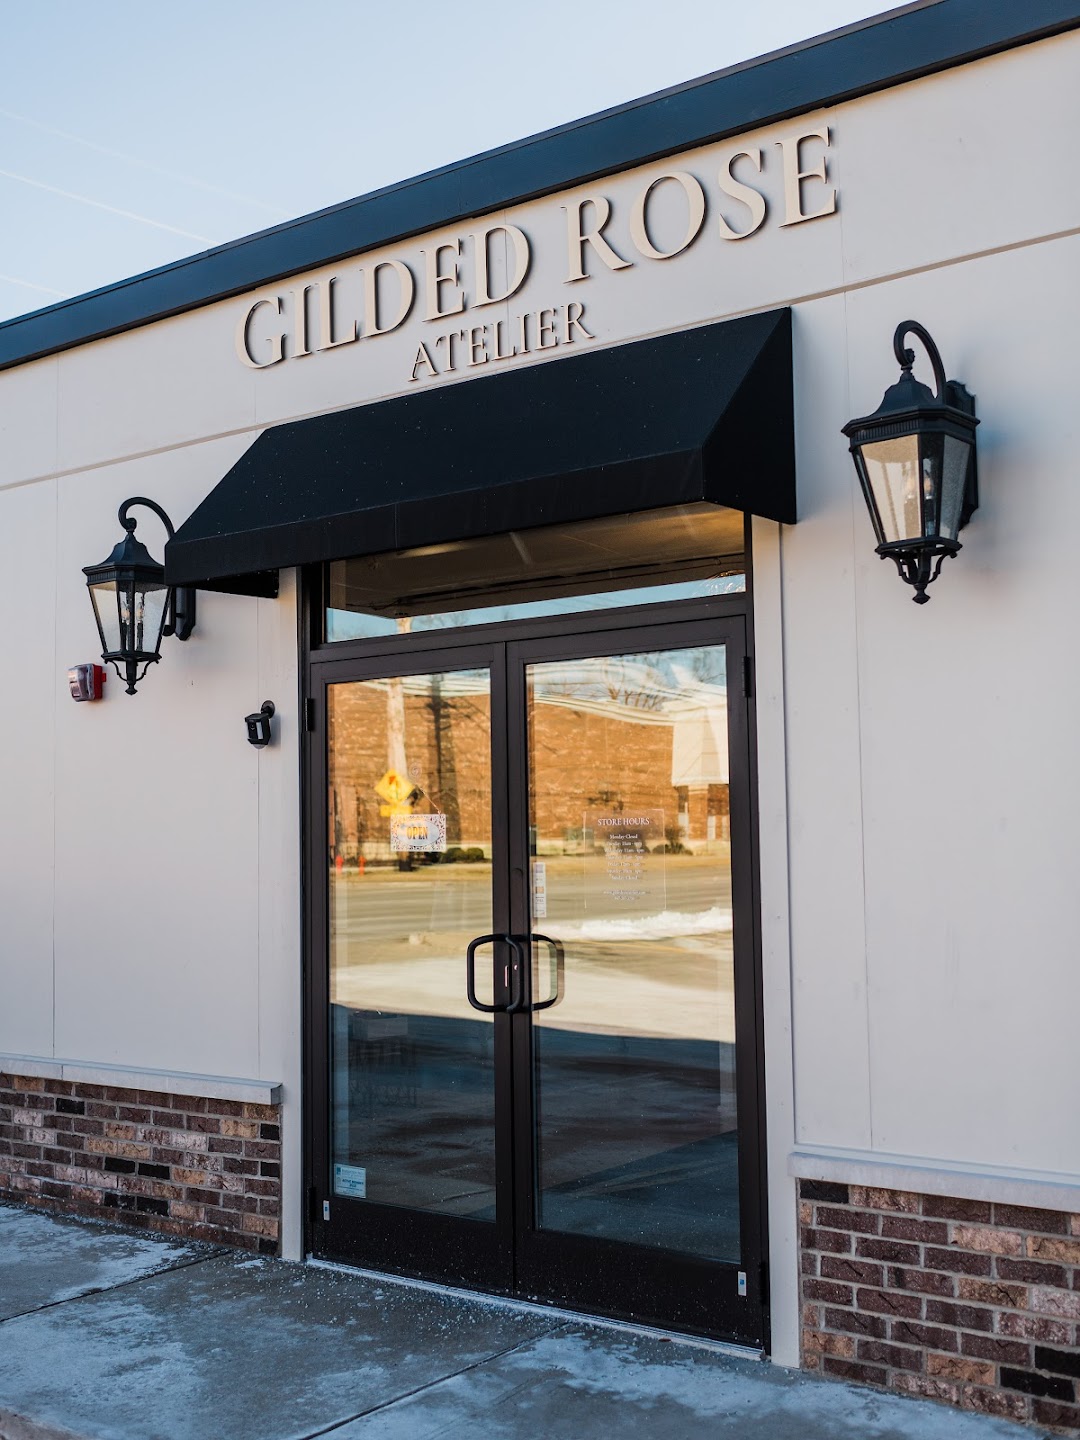 Gilded Rose Atelier